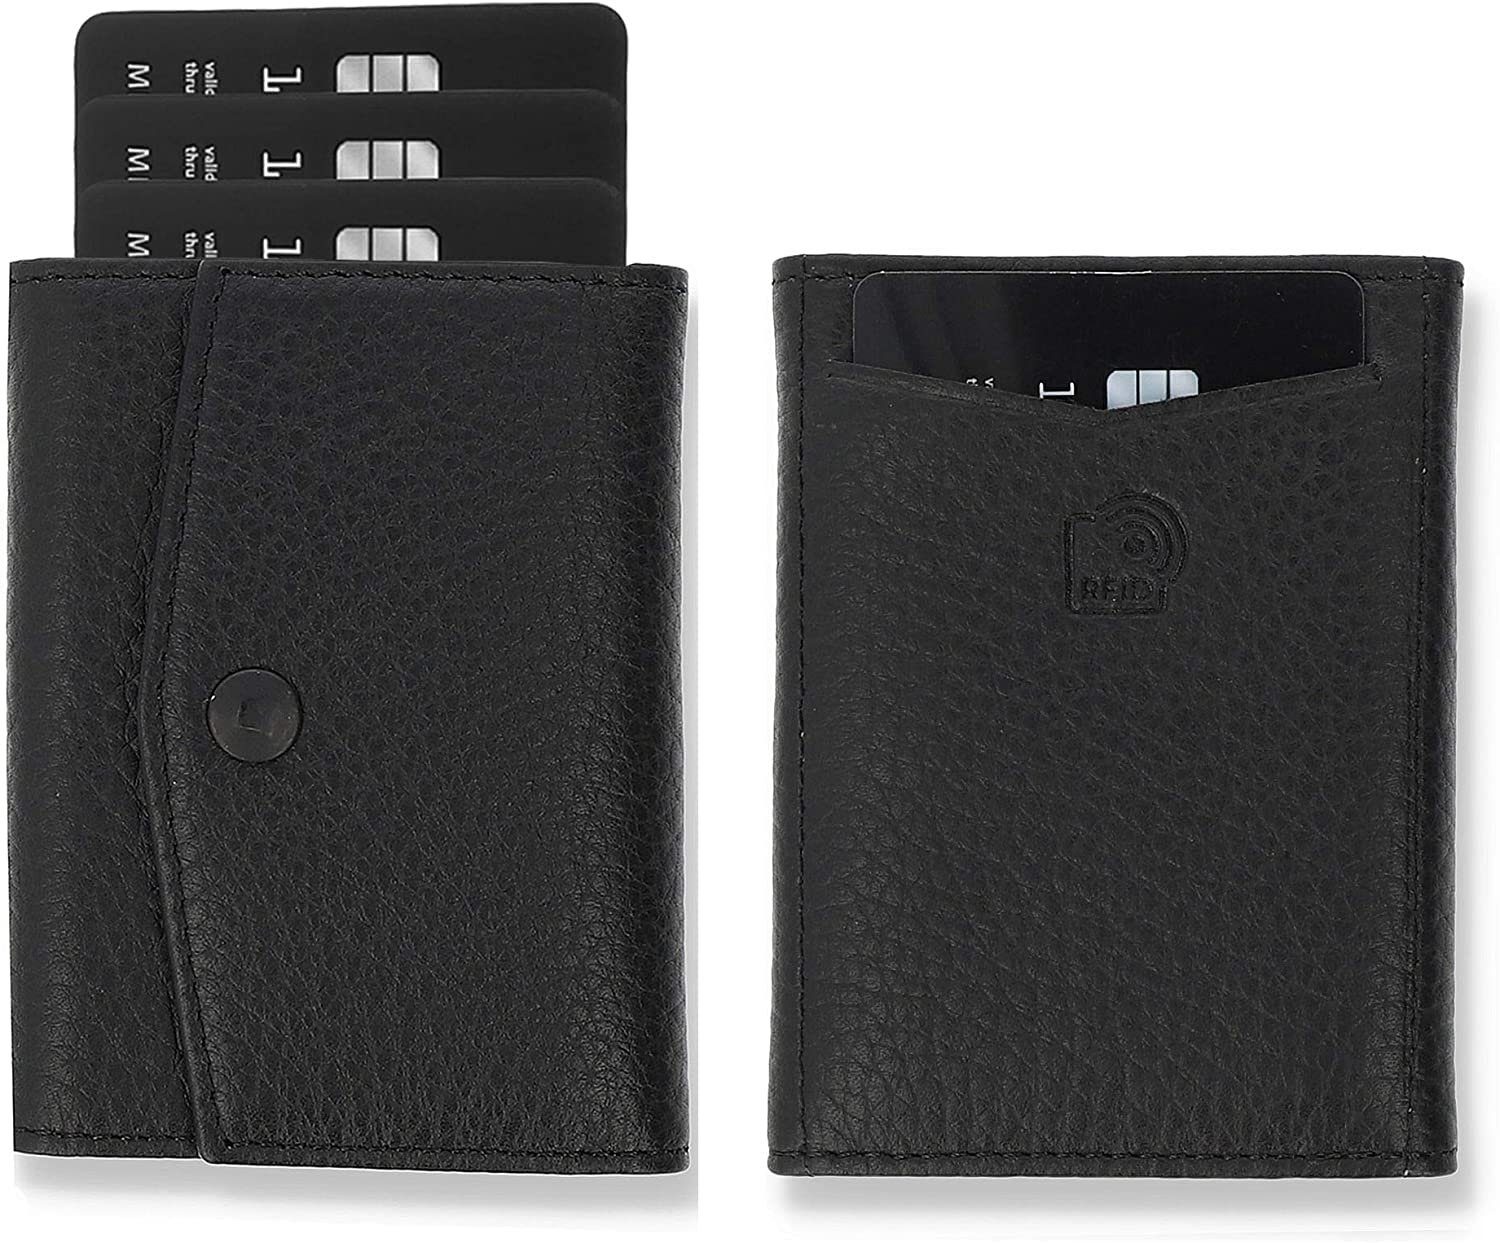 Solo Pelle Geldbörse Slim Wallet mit Münzfach I Geldbeutel mit RFID Schutz I für 12 Karten, RFID Schutz, Echtes Leder, dünne Geldbörse Schwarz ohne Münzfach